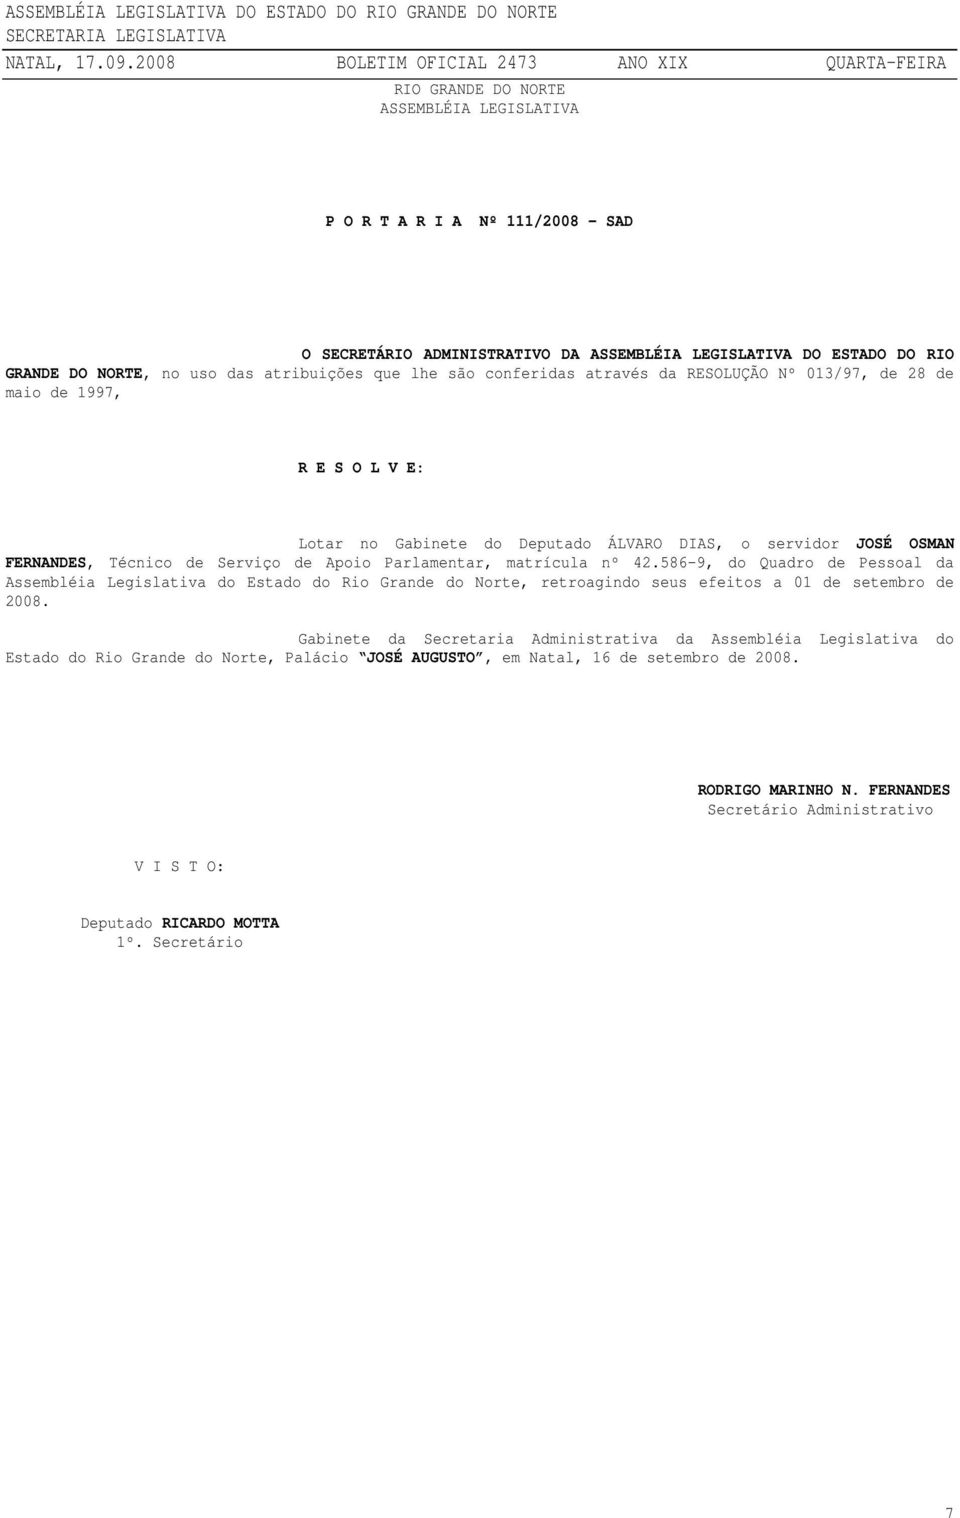 586-9, do Quadro de Pessoal da Assembléia Legislativa do Estado do Rio Grande do Norte, retroagindo seus efeitos a 01